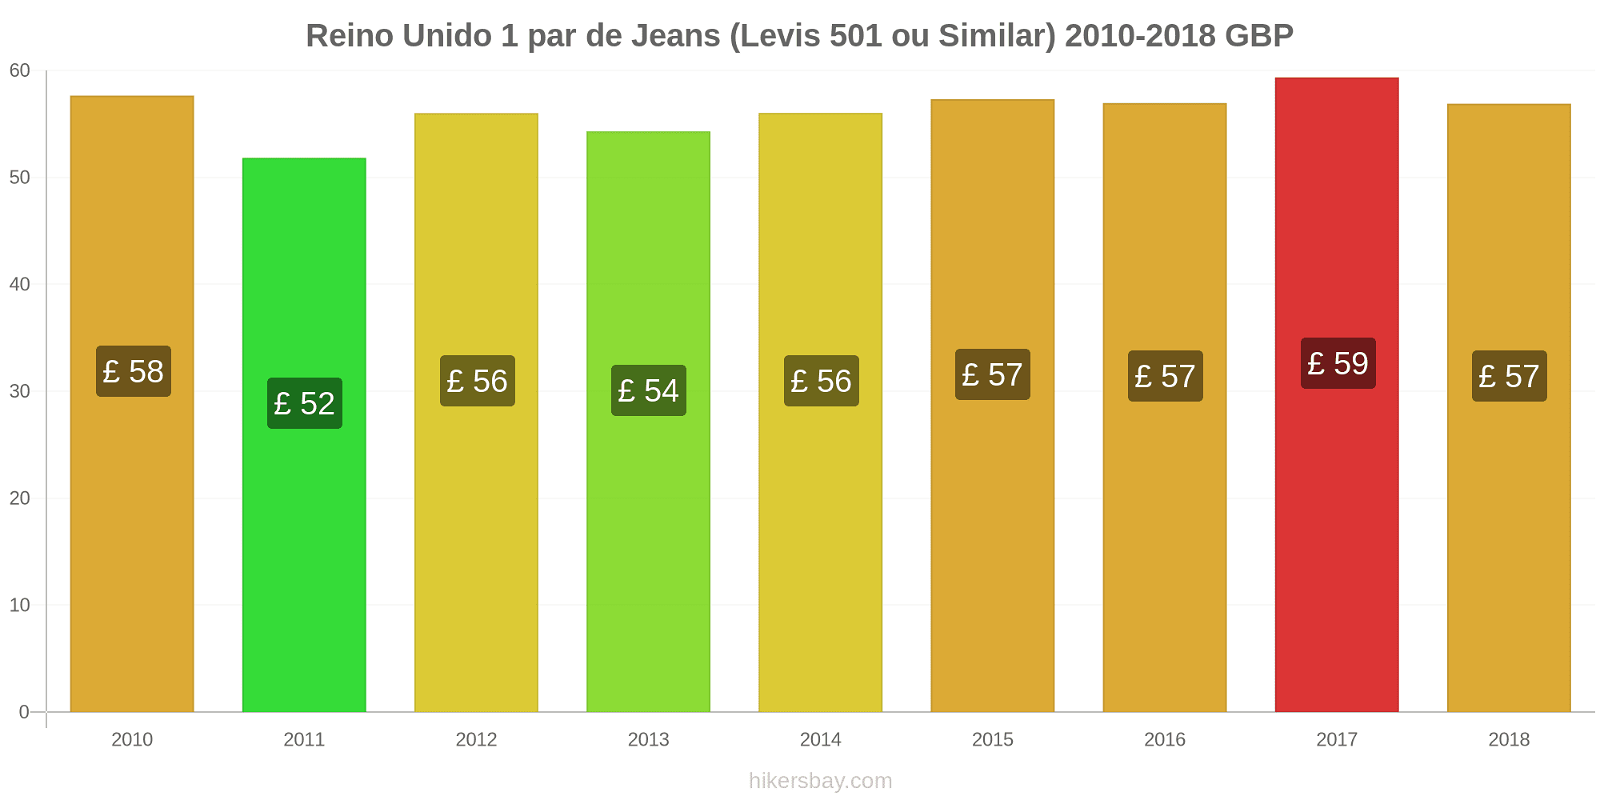 Reino Unido mudanças de preços 1 par de jeans (Levis 501 ou similares) hikersbay.com